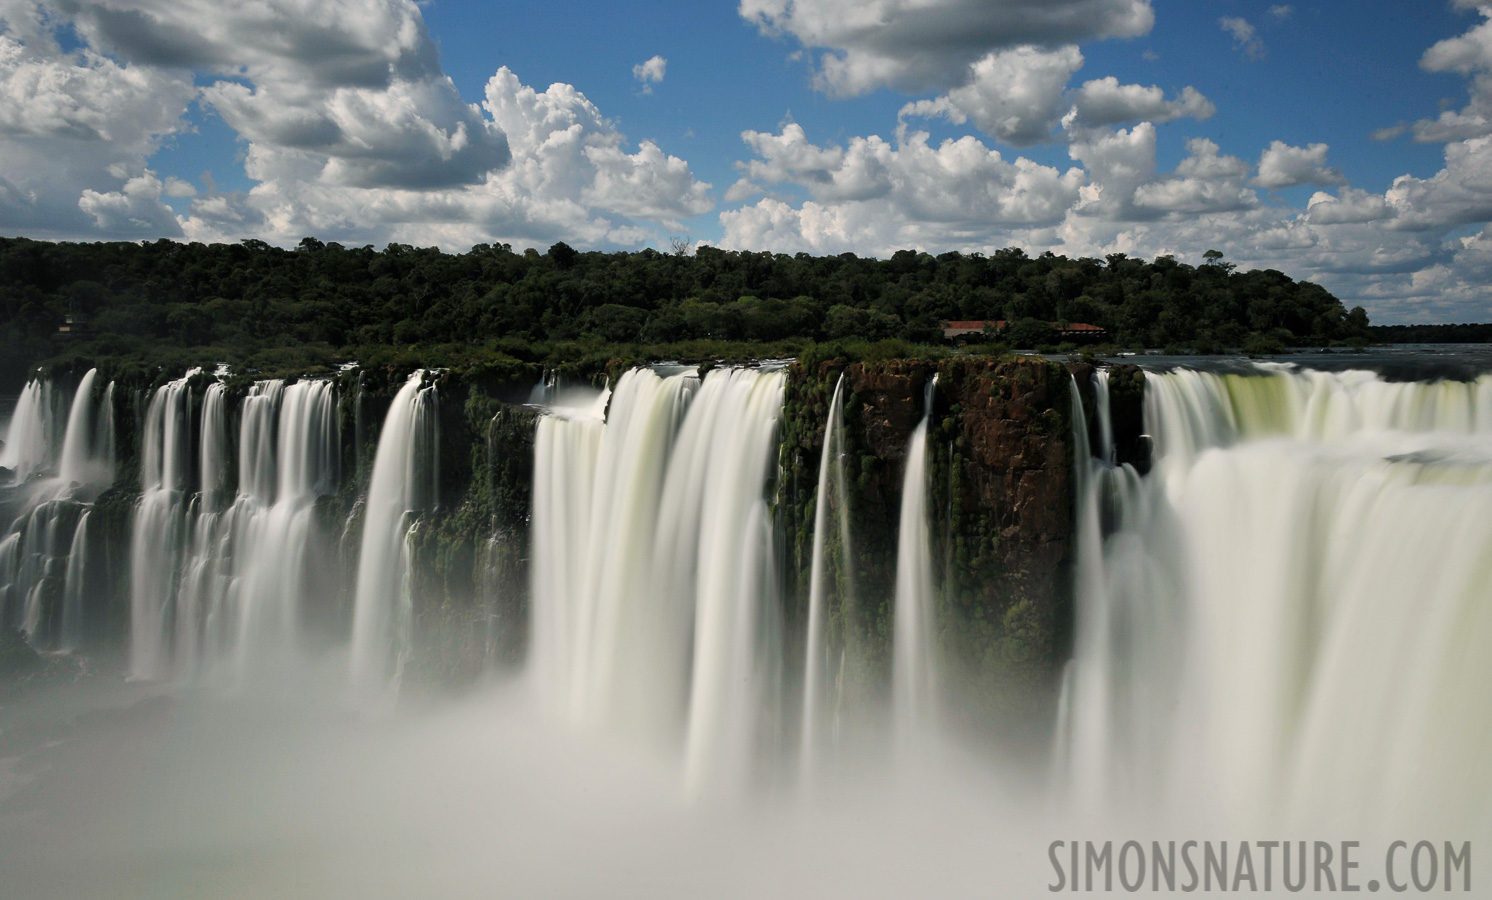 Cataratas del Iguazu [28 mm, 4.0 Sek. bei f / 22, ISO 200]